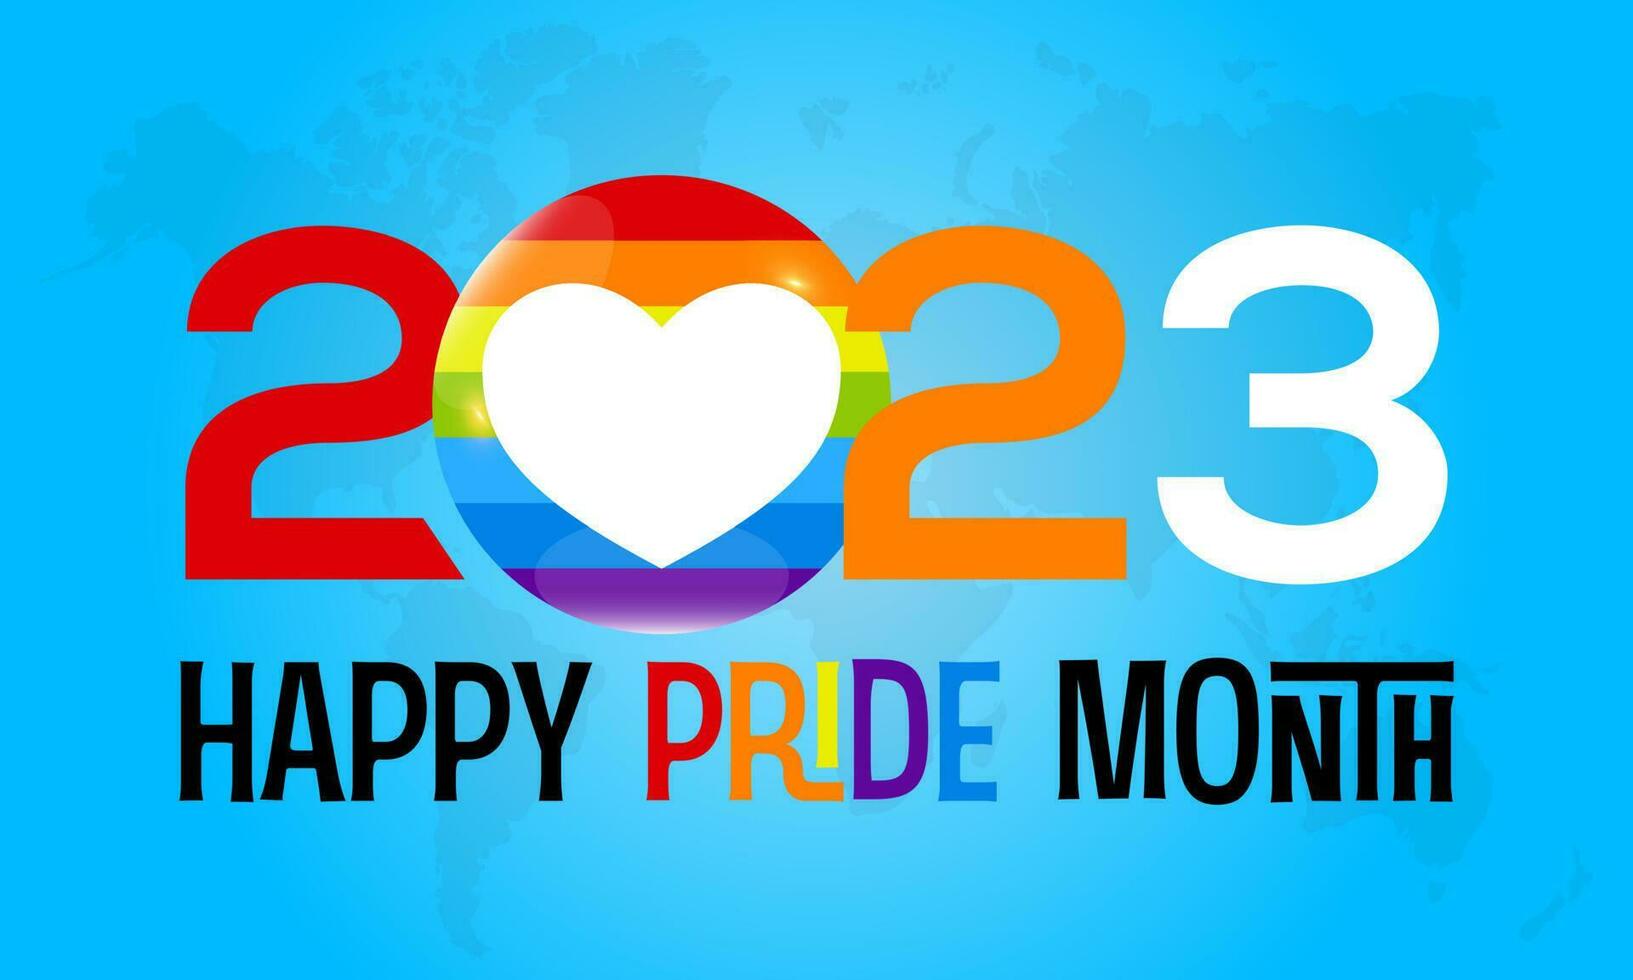 2023 concept trots maand transgender gemeenschap viering vector sjabloon. diversiteit, homoseksueel, regenboog concept spandoek.